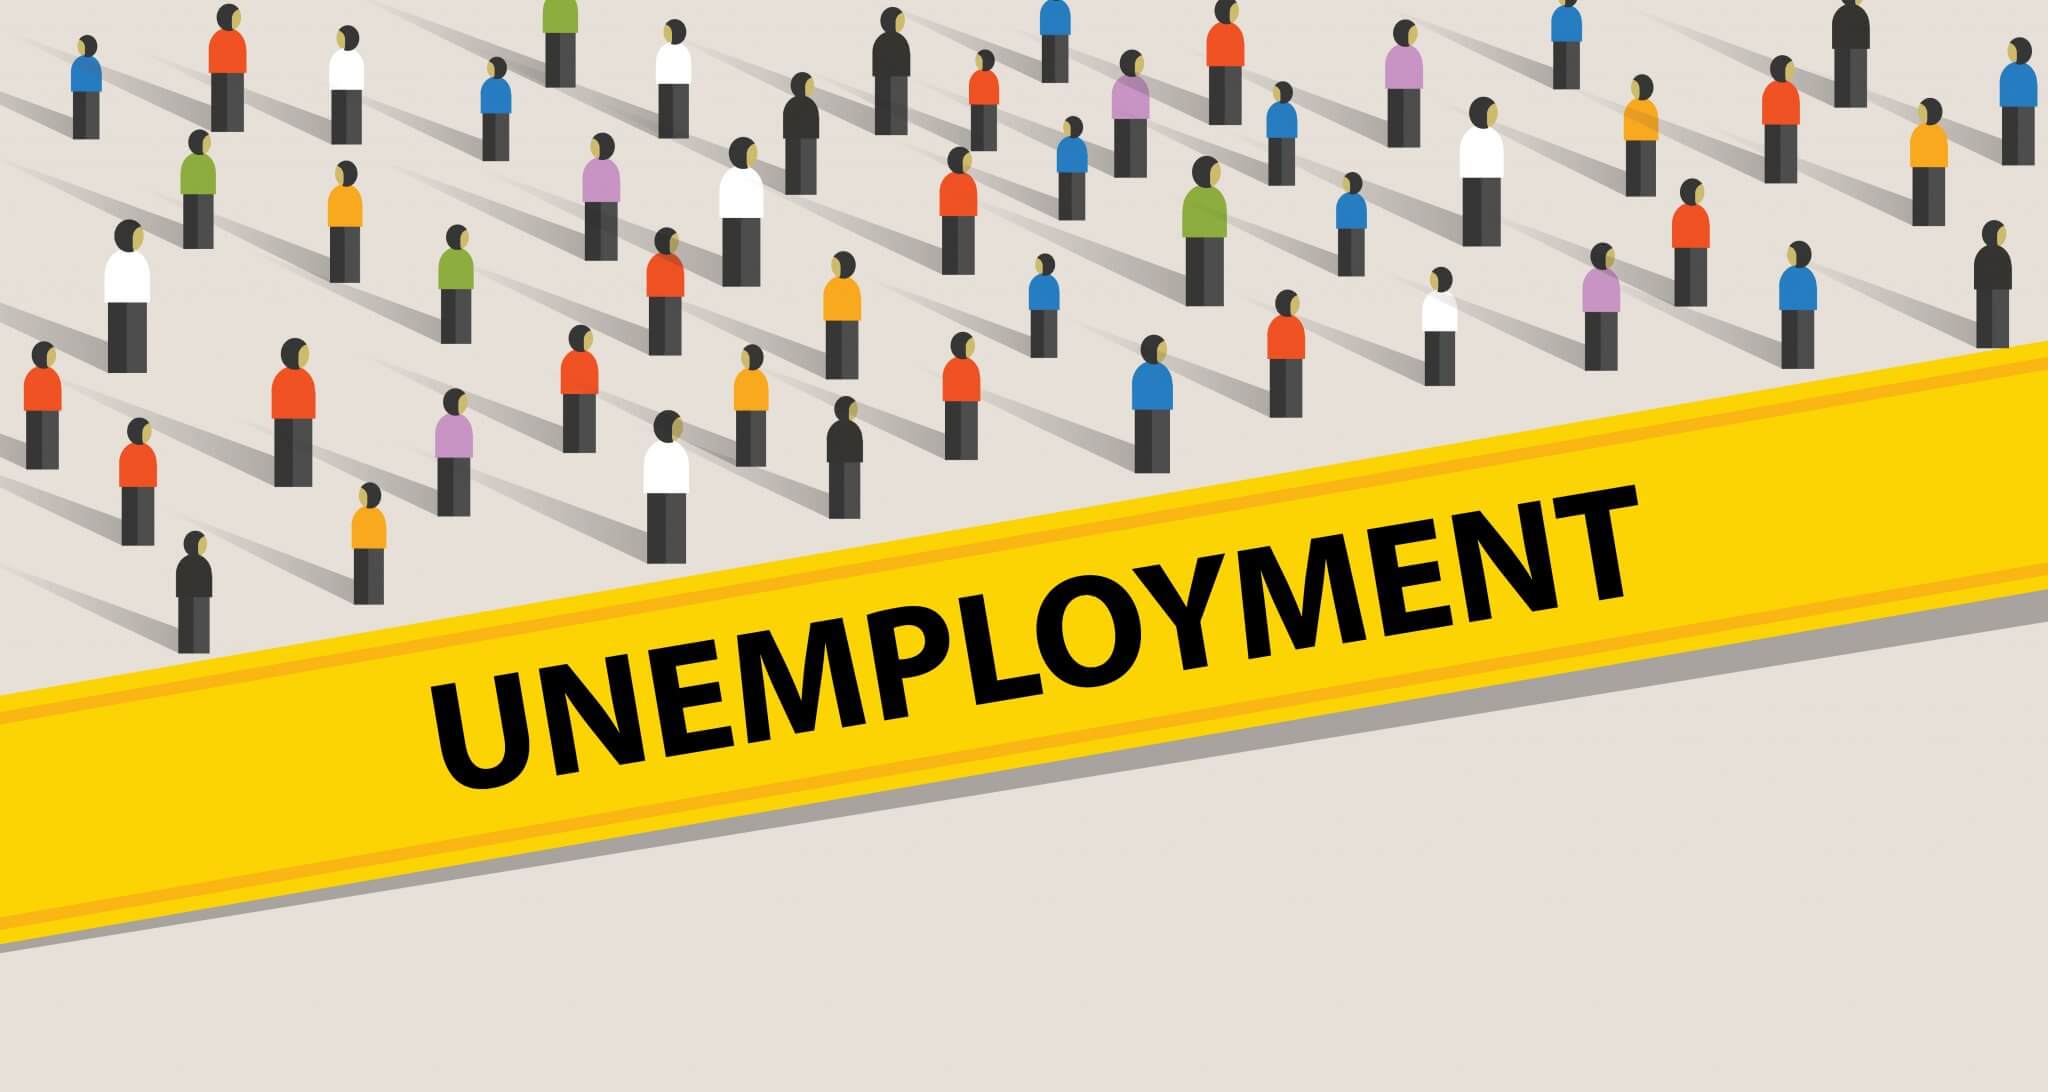 presentation of unemployment